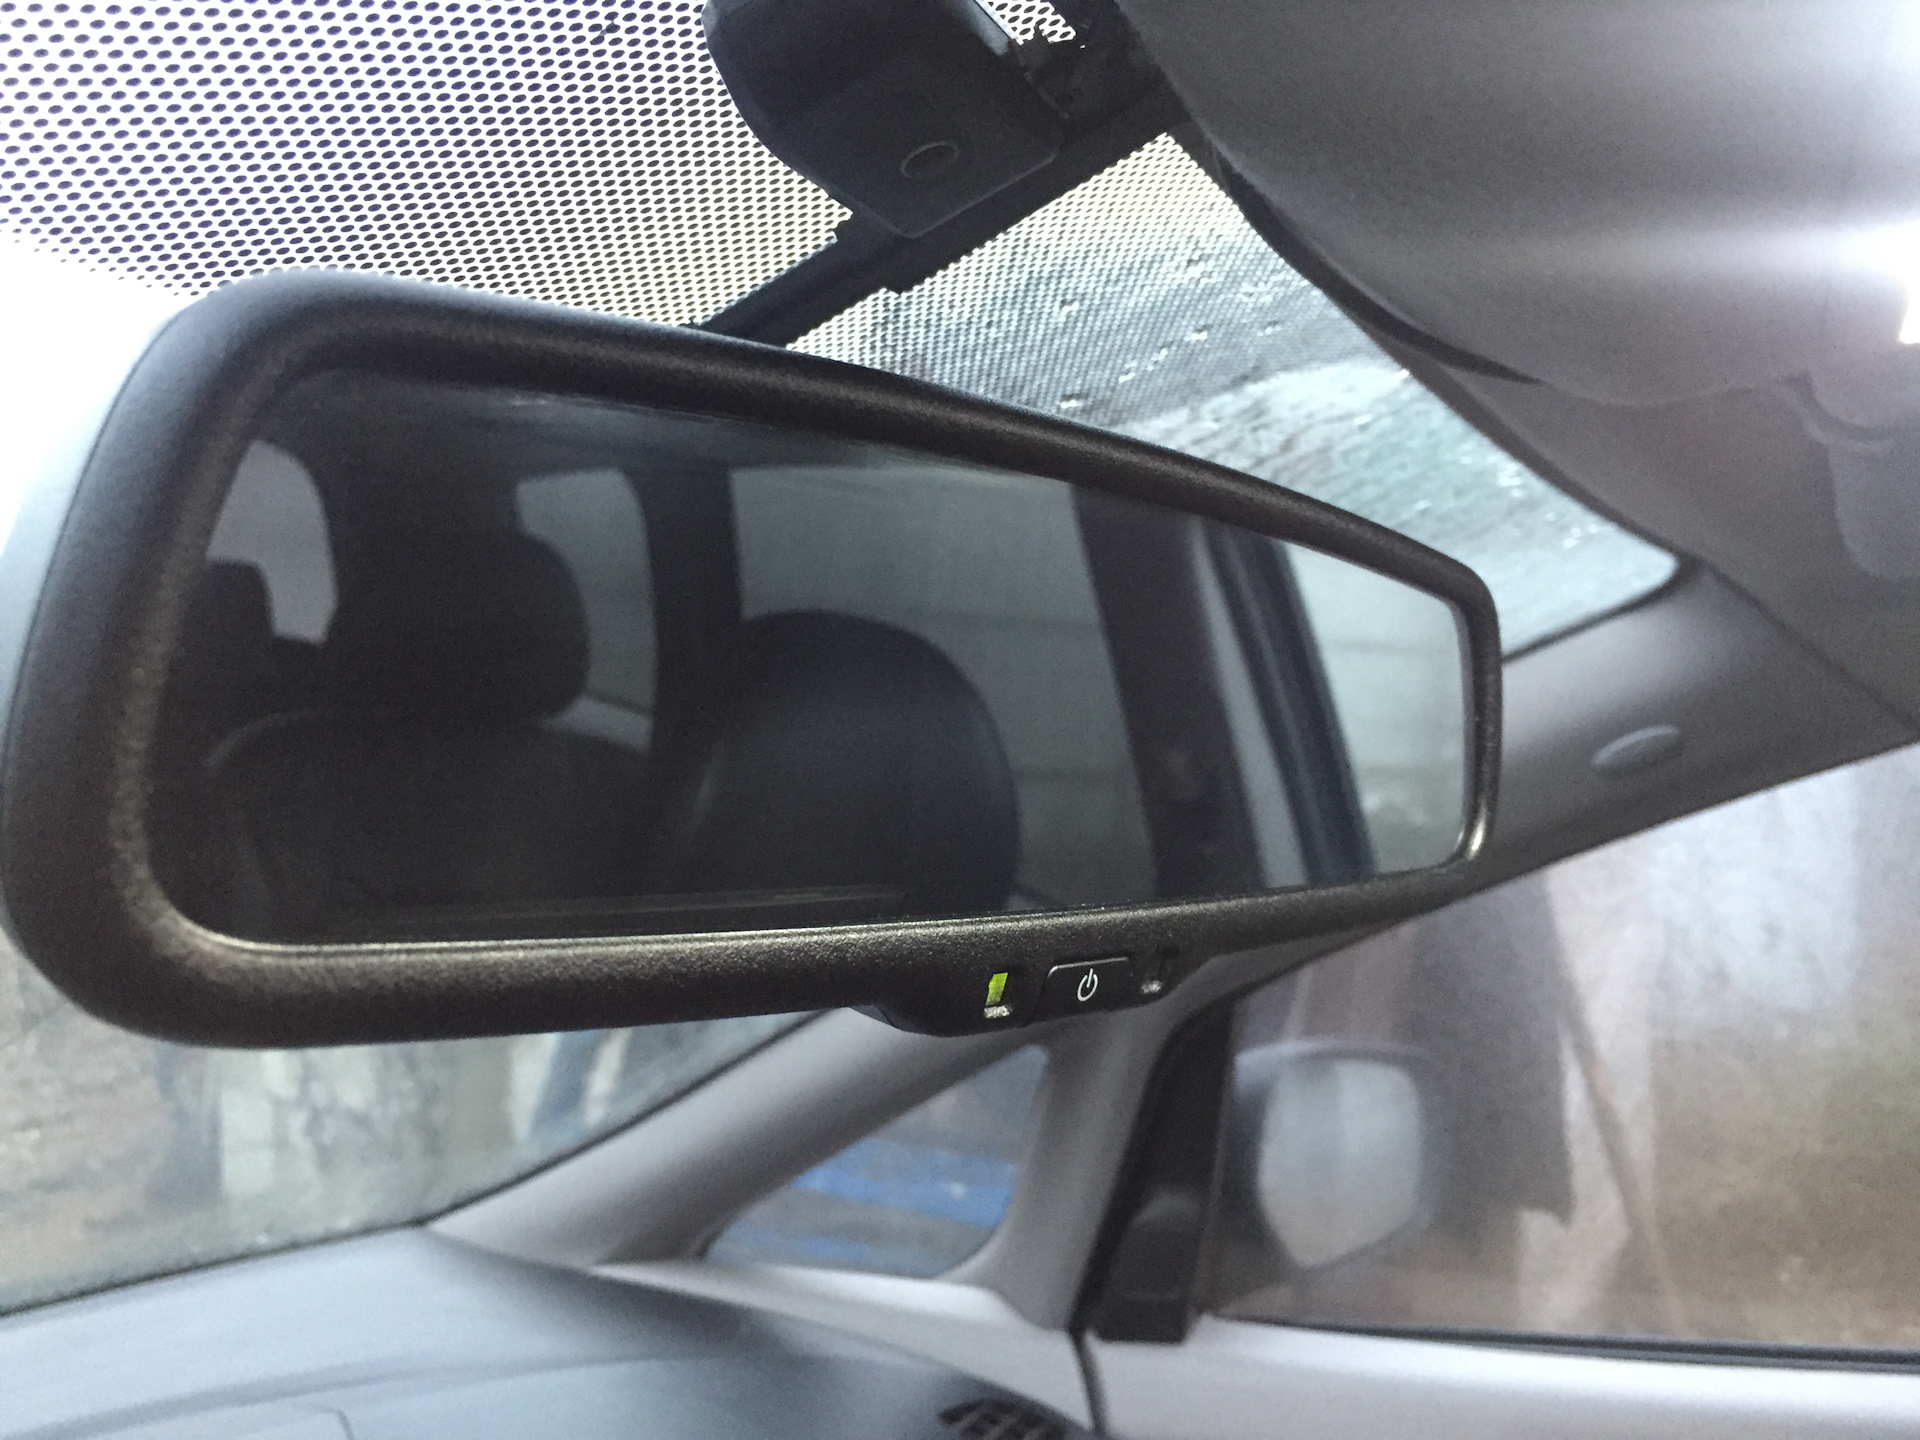 Автозатемнение зеркала заднего. Зеркало с автозатемнением и монитором Lancer 10. Зеркало с автозатемнением Приус 20.